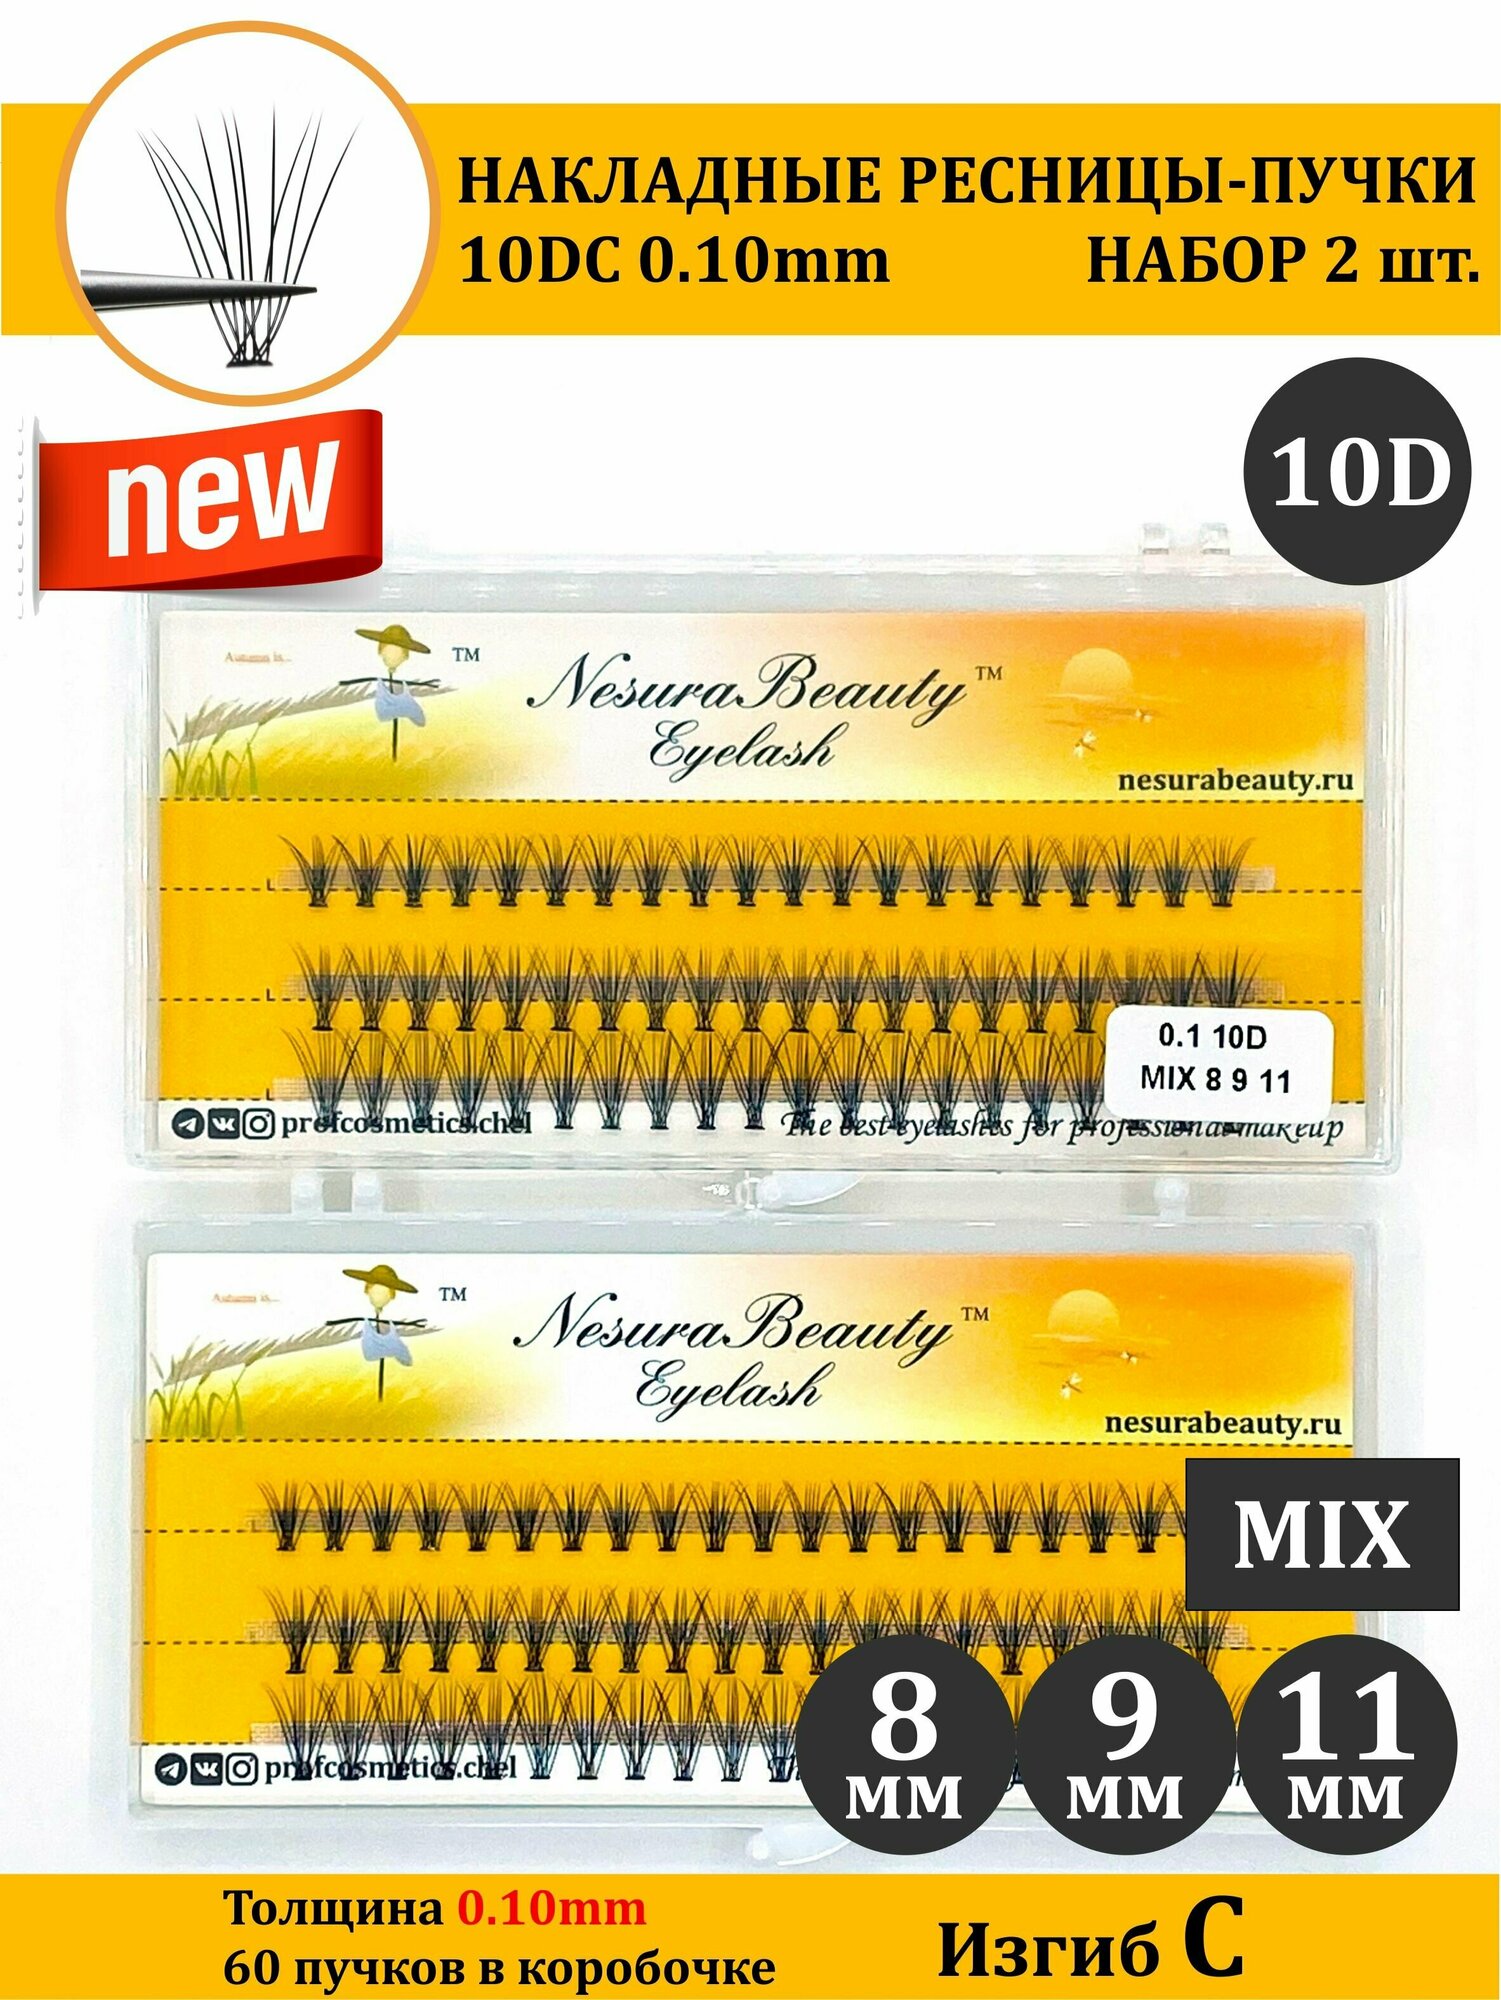 NesuraBeauty / 10D / Накладные пучки ресниц / Набор 2шт / MIX 8 9 11 мм, 0.1, изгиб С 10Д / для макияжа и визажиста